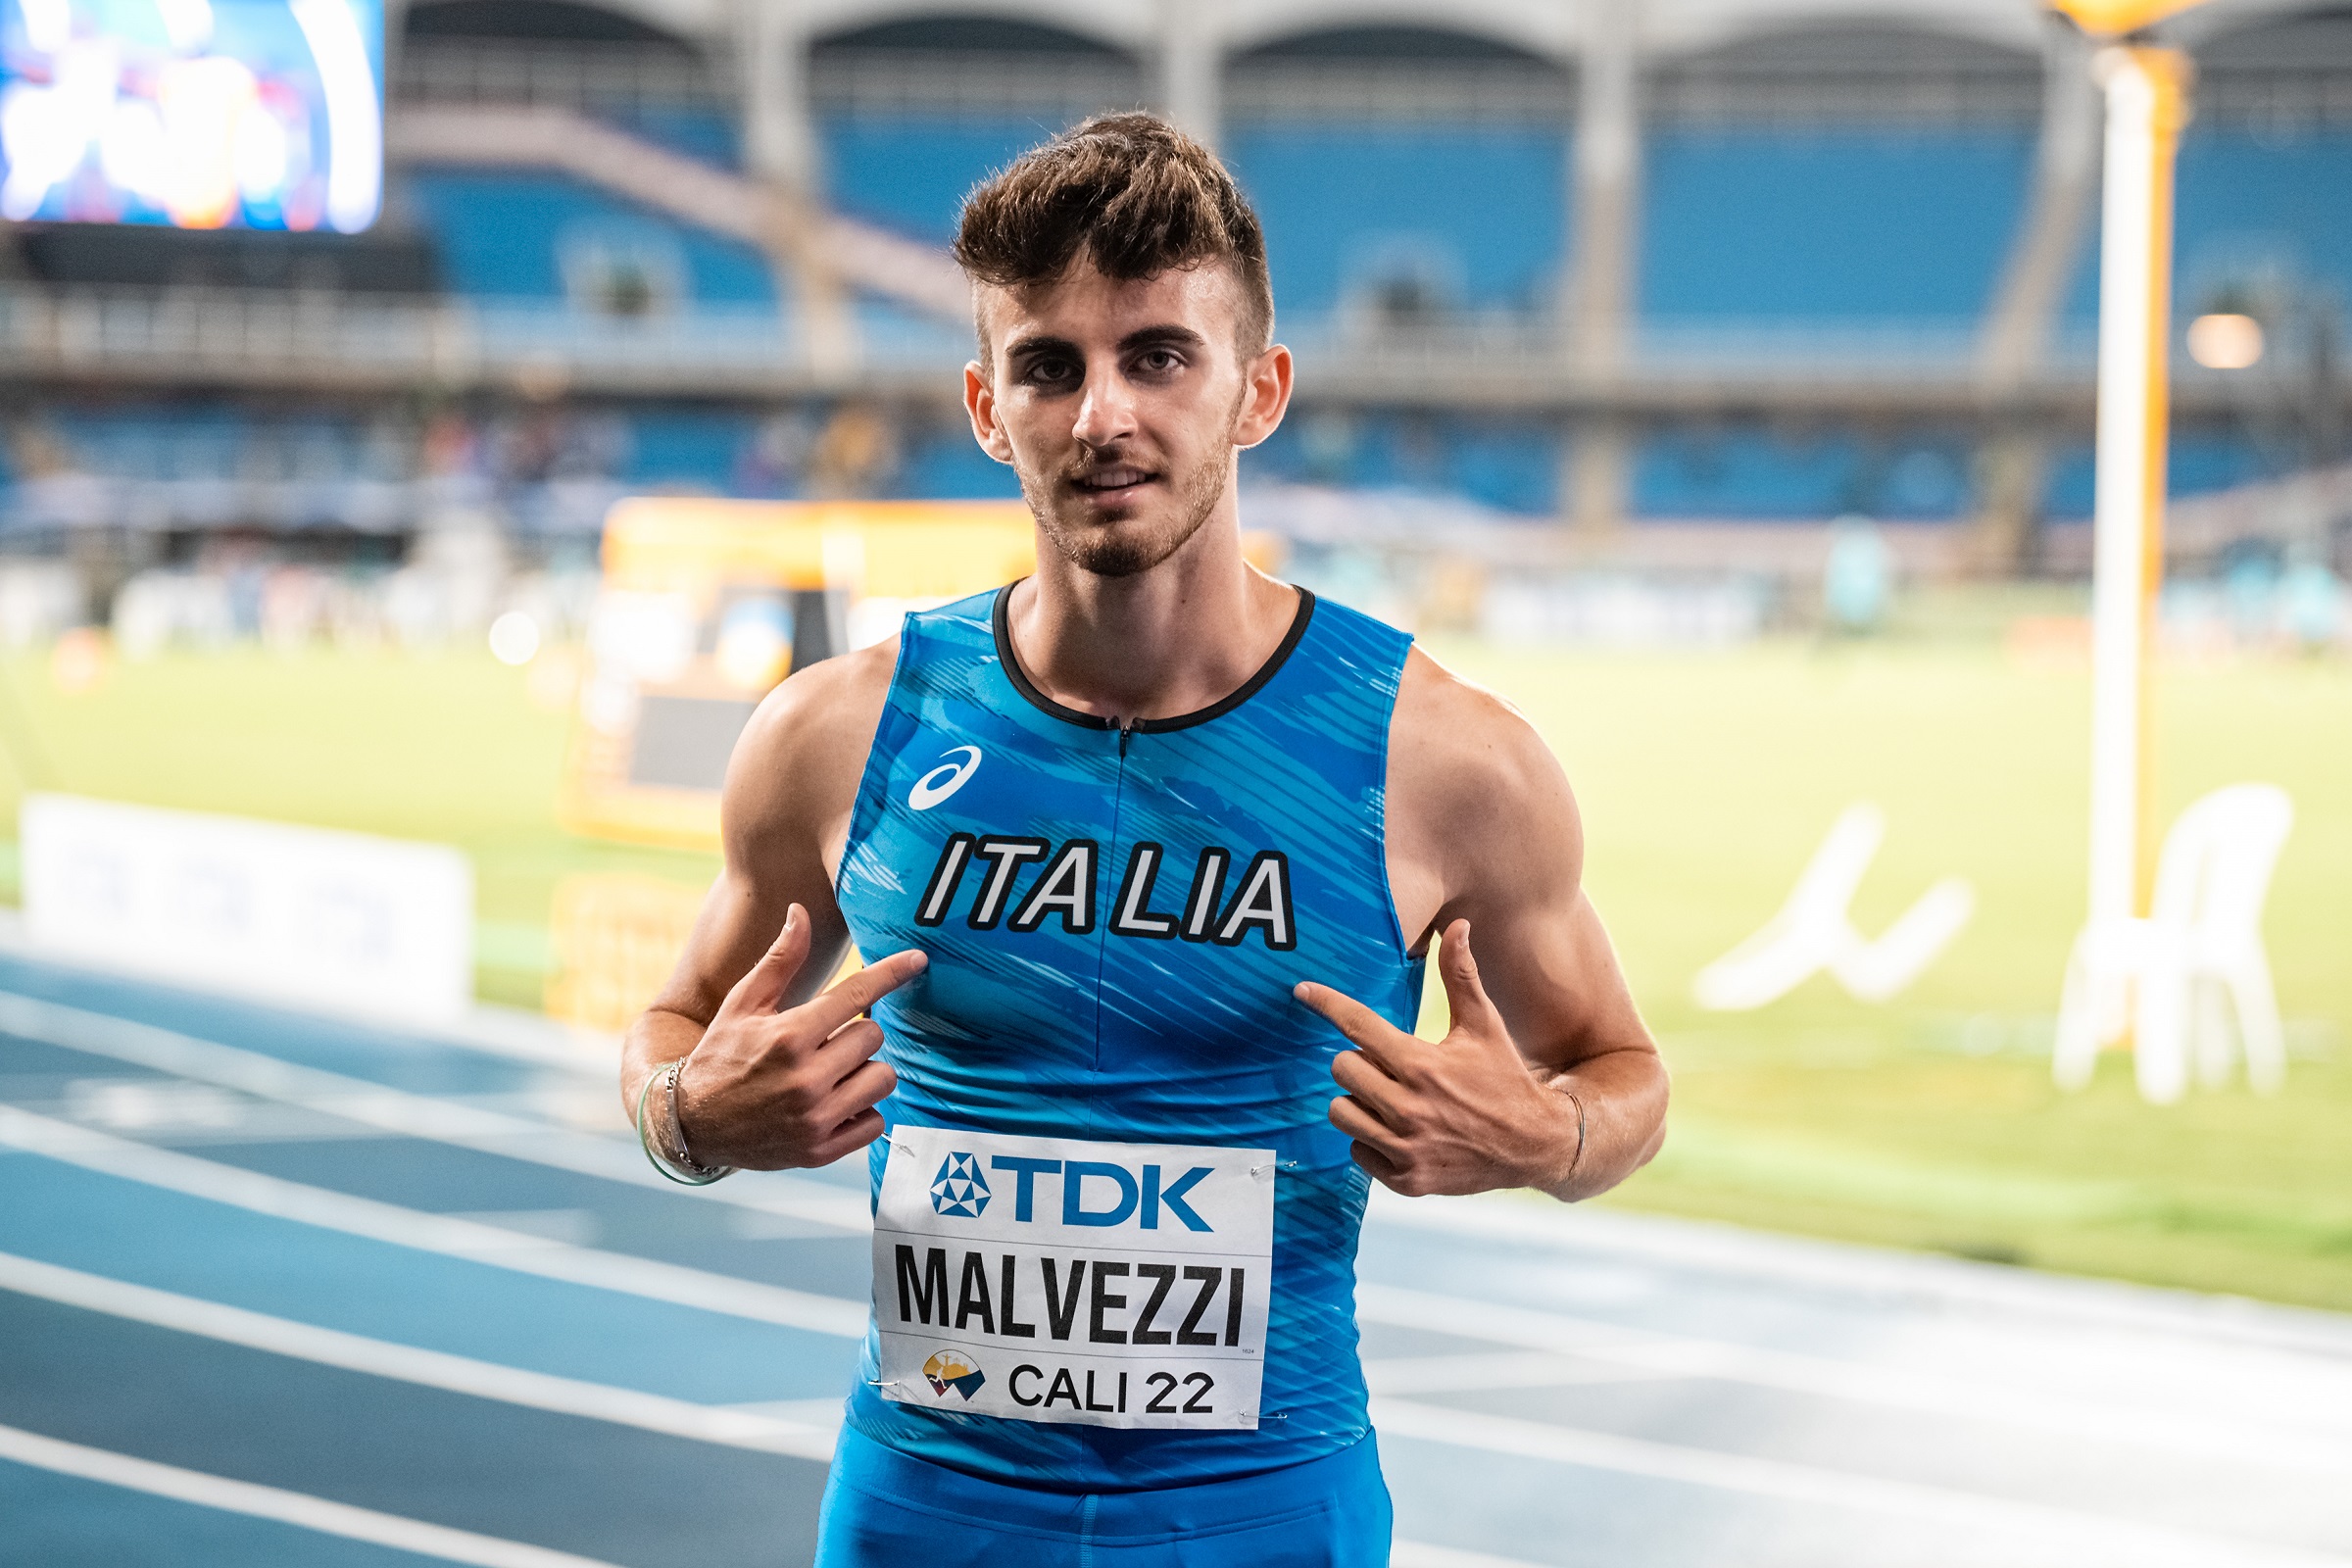 Alessandro MALVEZZI